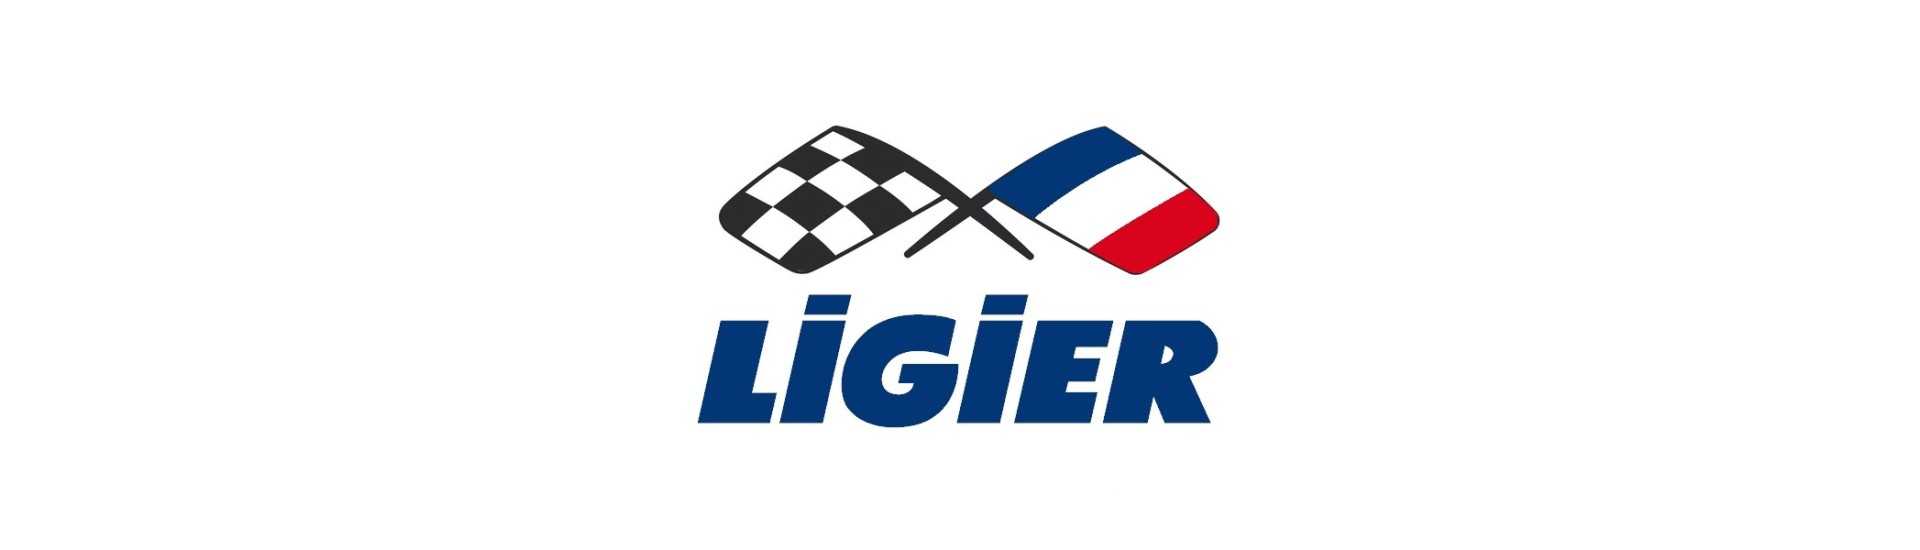 Styrhjul till bästa pris för bil utan tillstånd Ligier